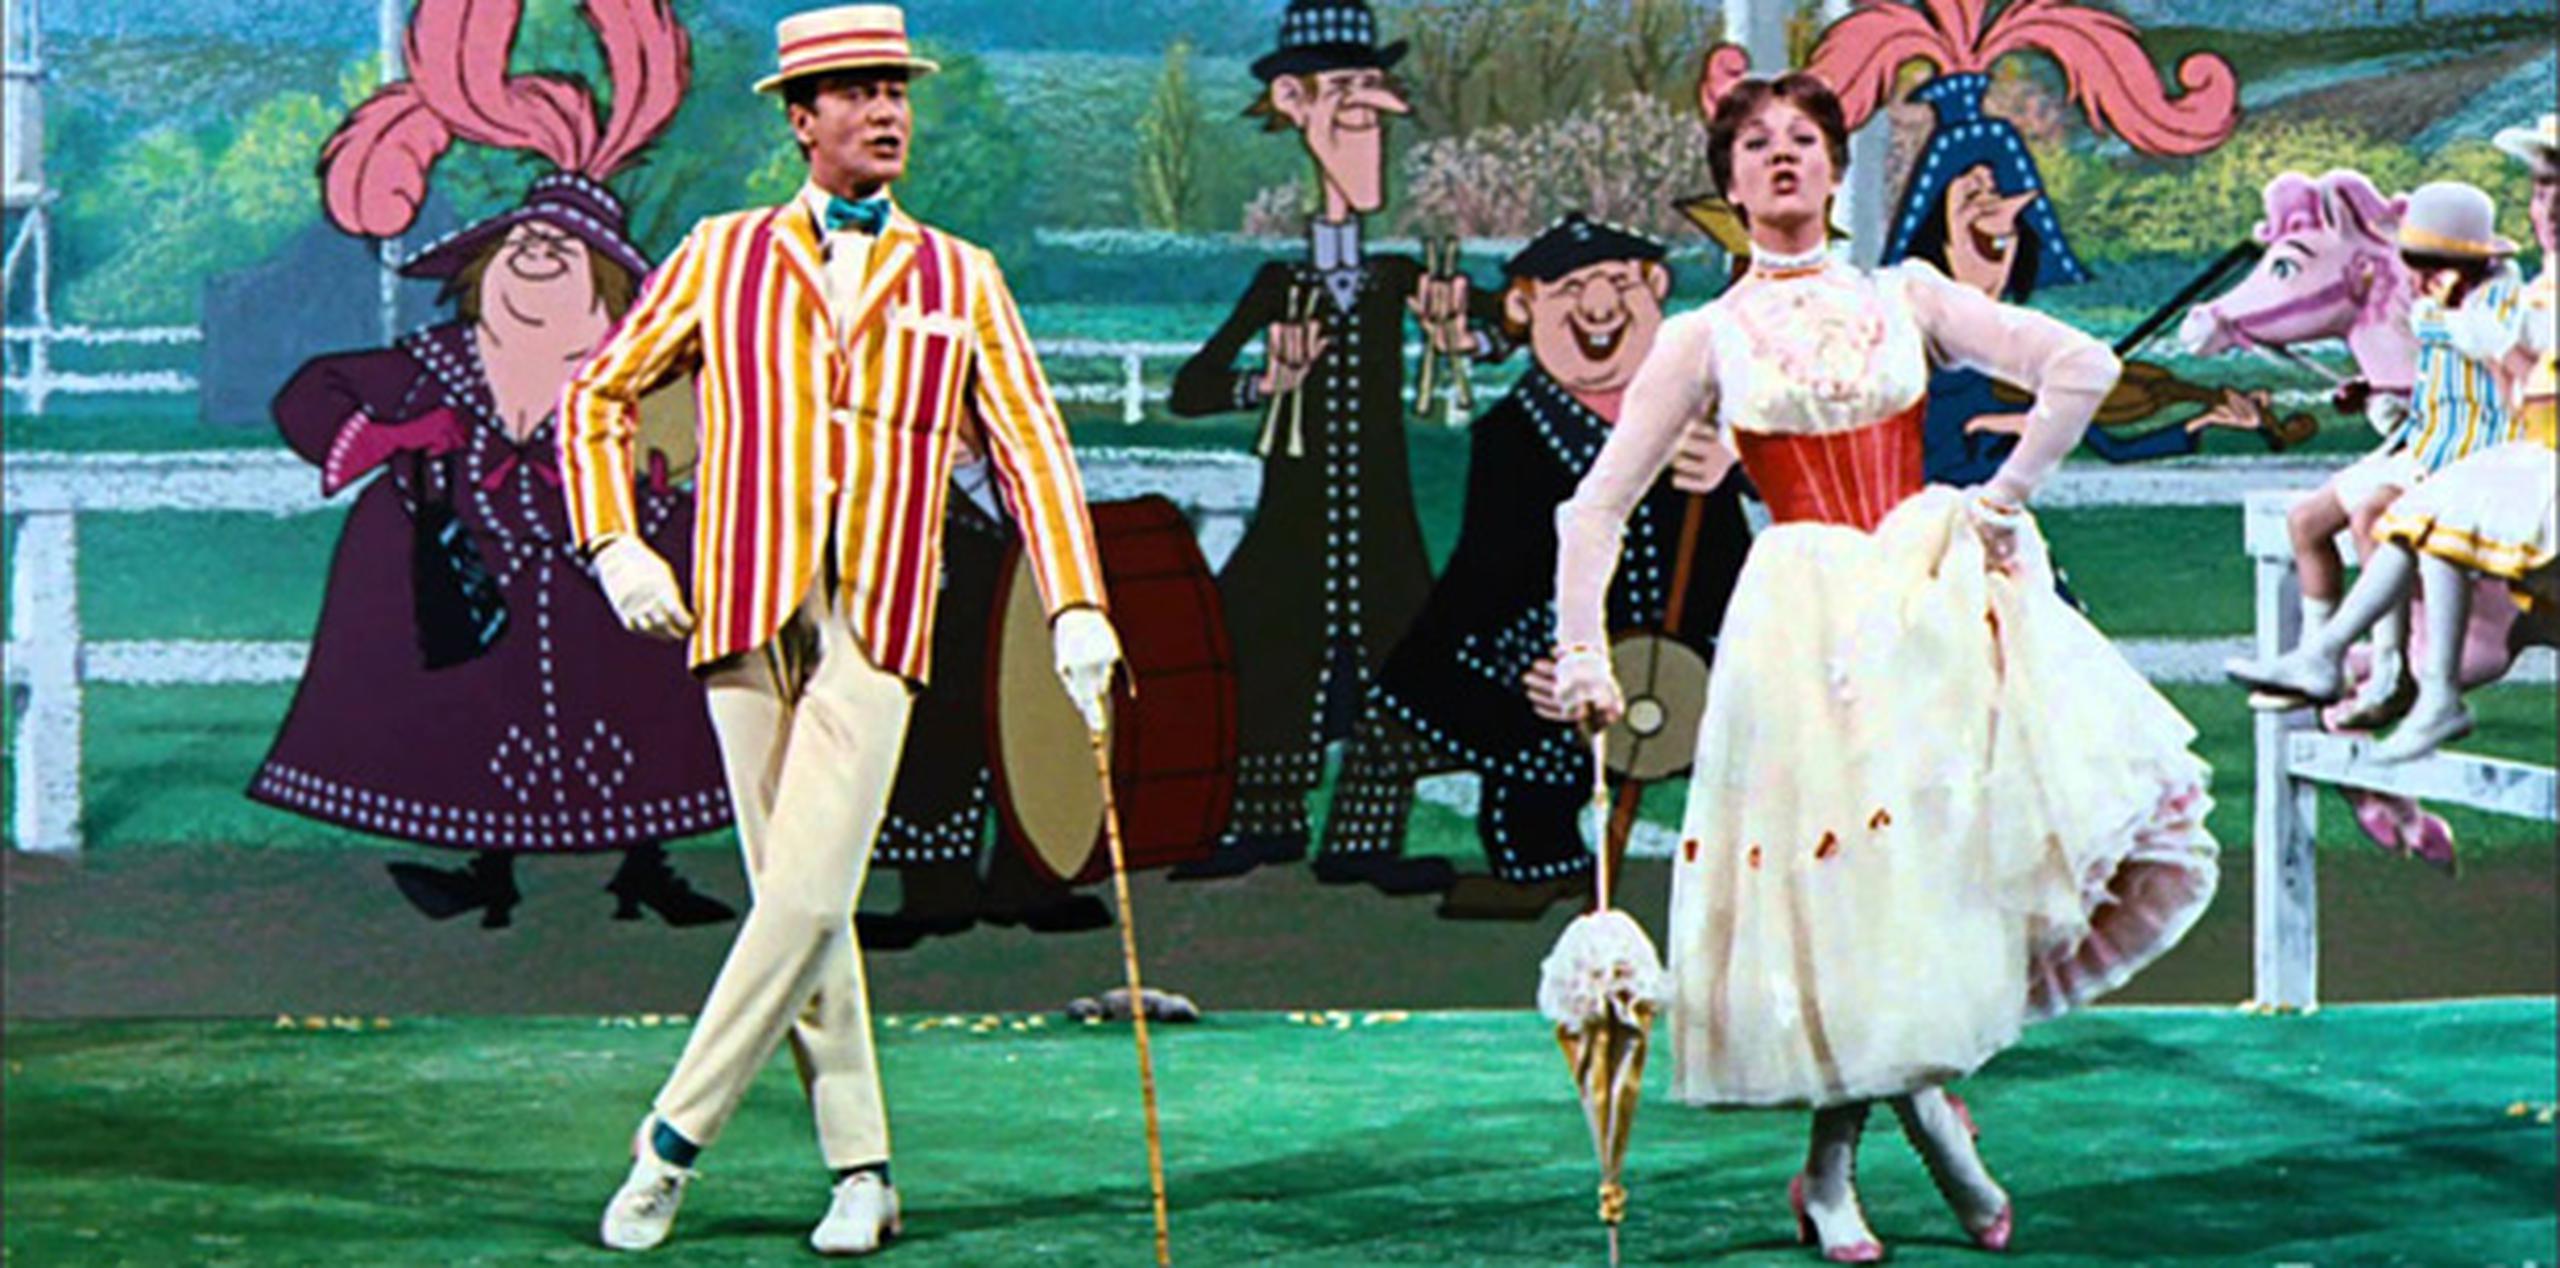 Dick Van Dyke y Julie Andrews interpretaron el memorable número "Supercalifragilisticoespialidoso" en el filme "Mary Poppins".